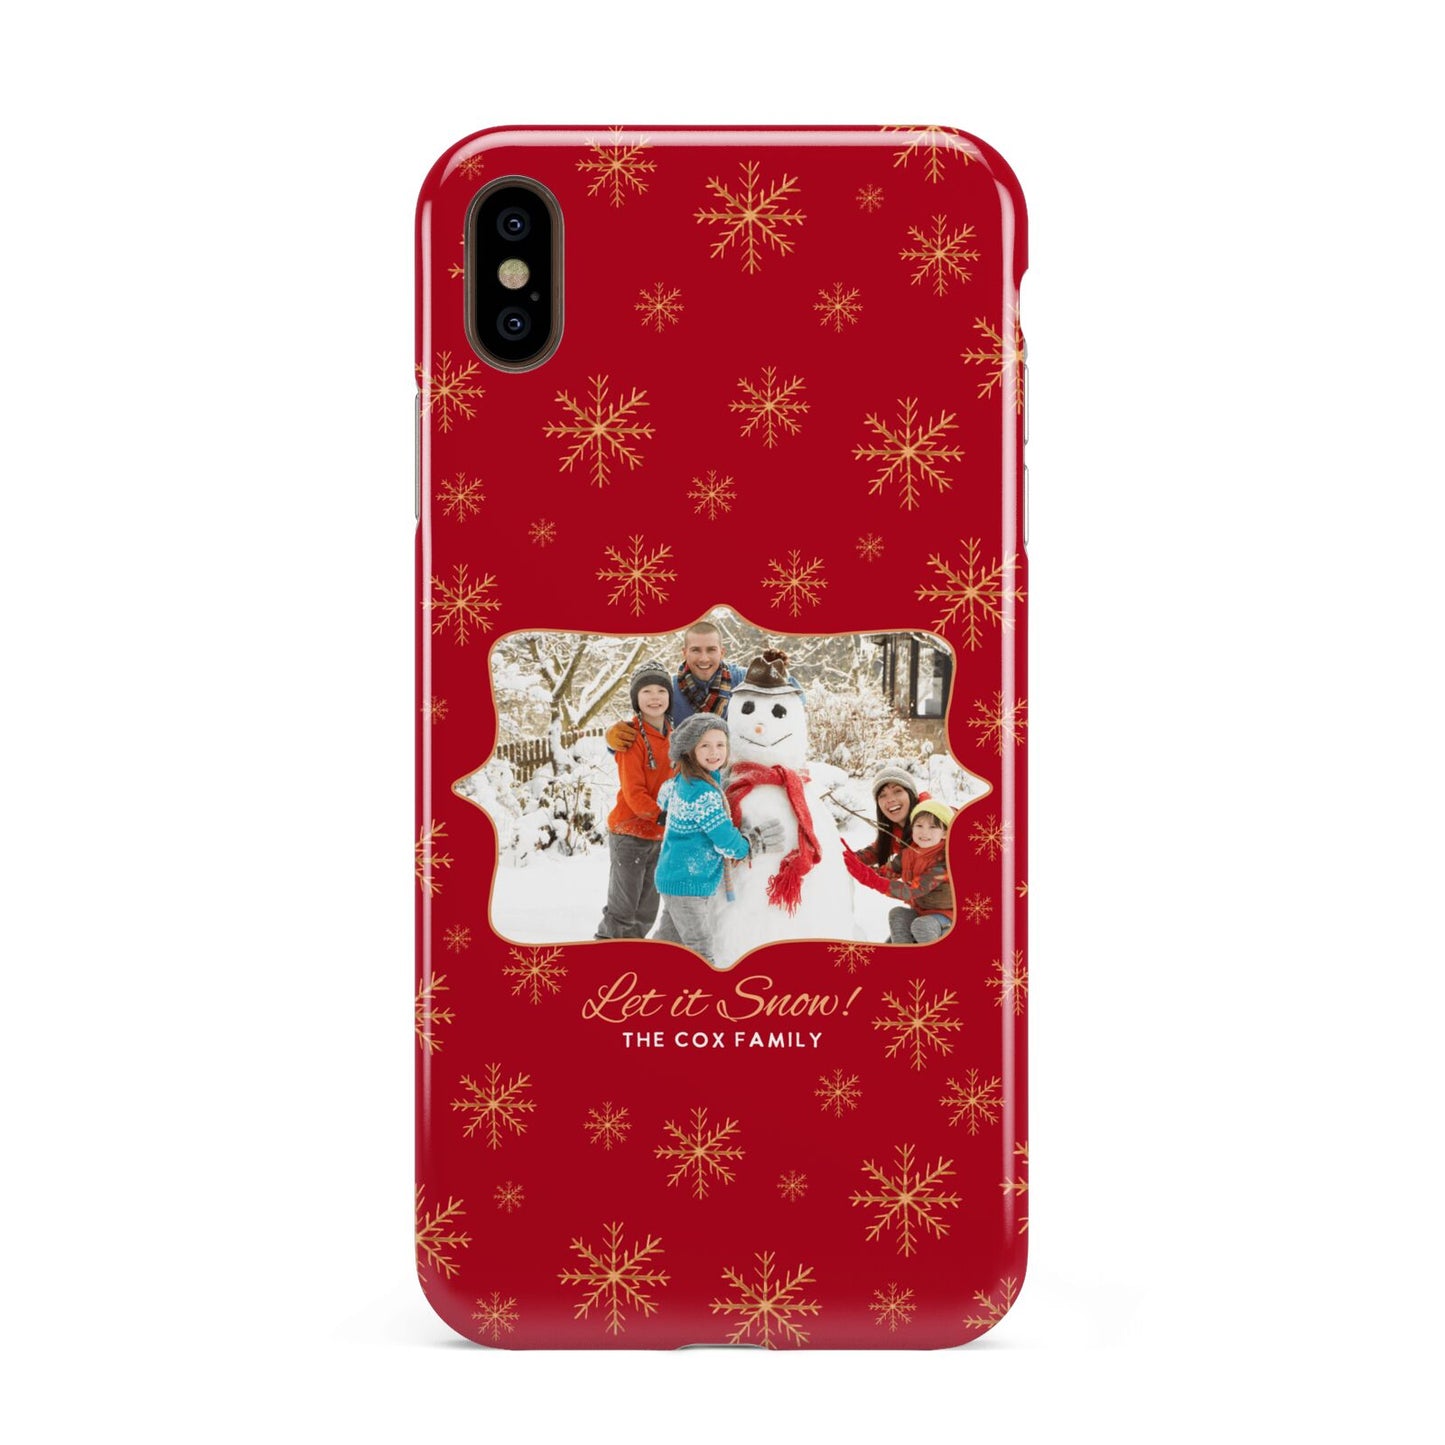 Let it Snow Christmas Photo Upload Apple iPhone Xs Max 3D Tough Case